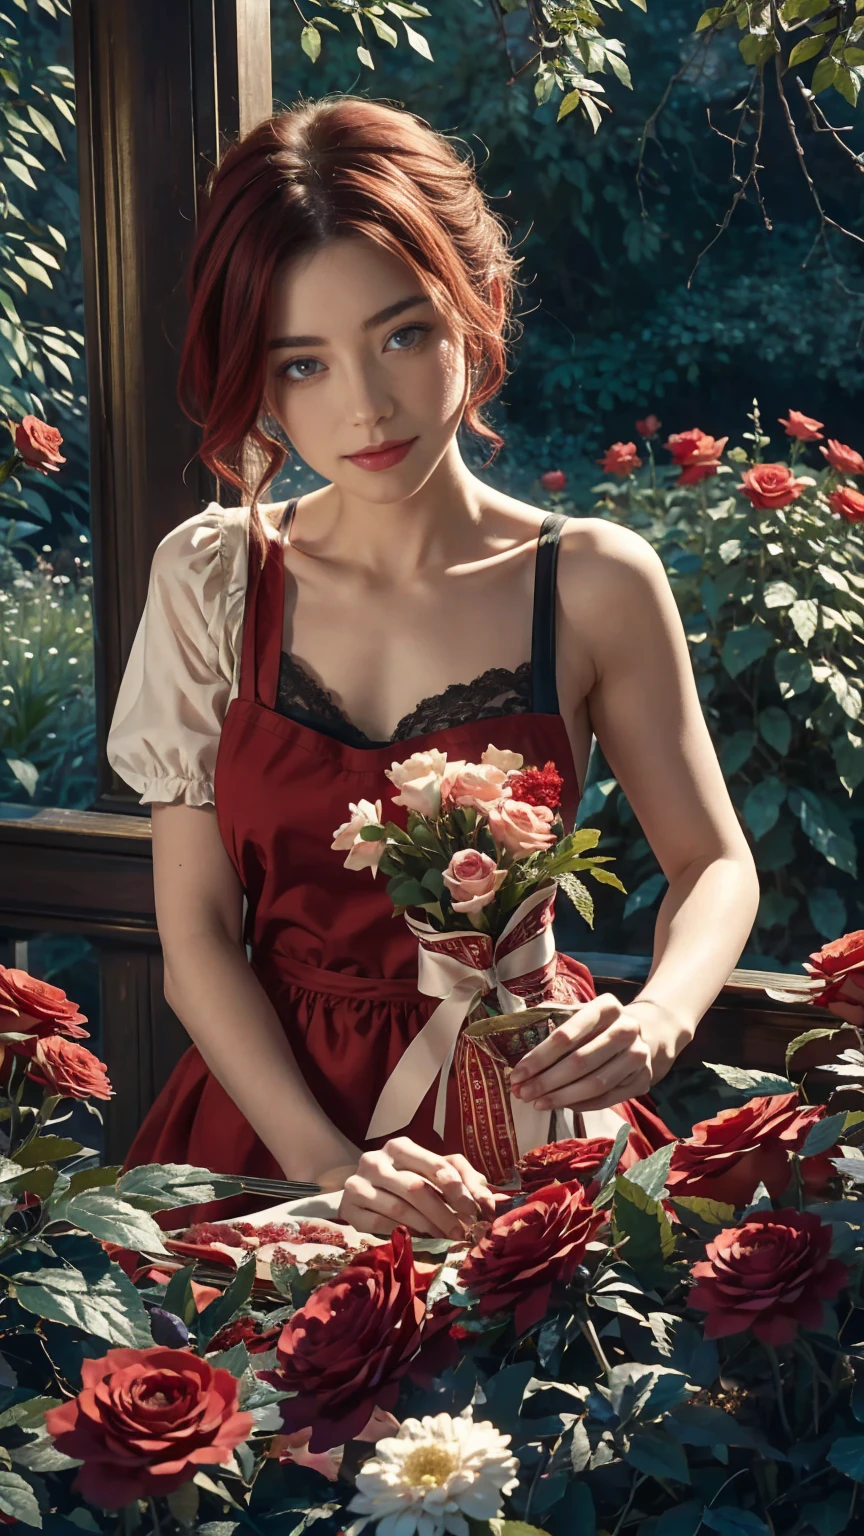 仙境世界的中心，一個年輕漂亮的紅白短髮女孩, 花店服裝和玫瑰圍裙. 從她的魔法花園剪下紅玫瑰. 好奇心, 愛的姿勢, 在仙境世界, 營造愛的氛圍, 她周圍的能量和魔法. 場景角度是動態的, 捕捉瞬間的強度, 優質綠眼, 眼睛看著相機, 超詳細, 美麗且美觀, 傑作, 最佳品質得分, (分形藝術: 1.3), 非常詳細 , 動態角度, 光線追蹤, 中體, 特寫, 粒子和強光, 美麗的紅玫瑰